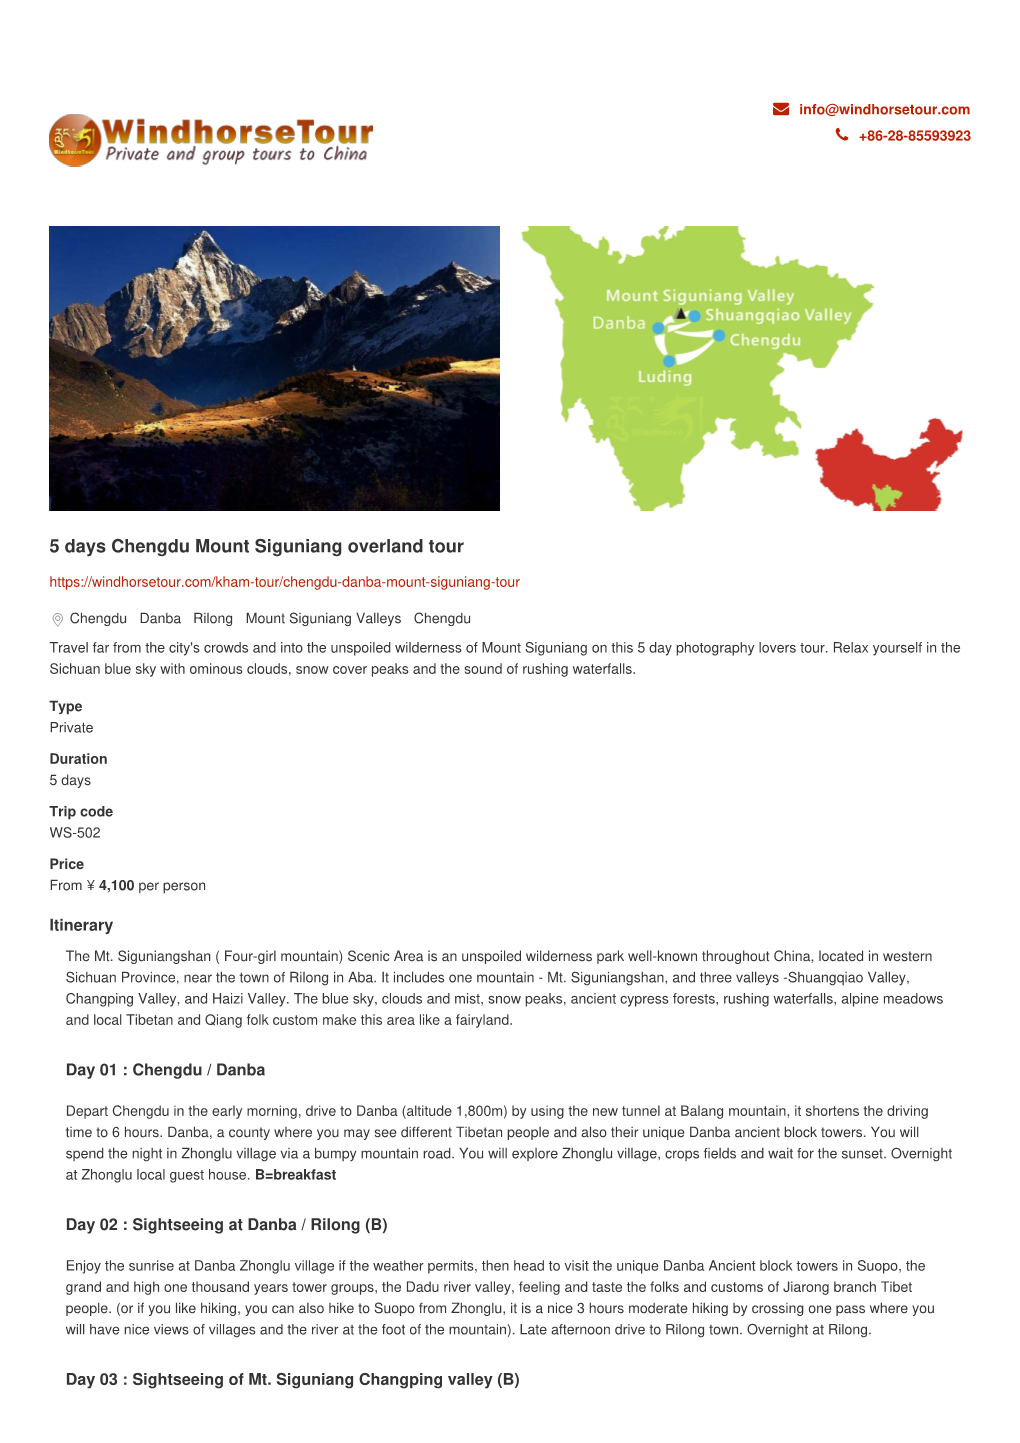 5 Days Chengdu Mount Siguniang Overland Tour